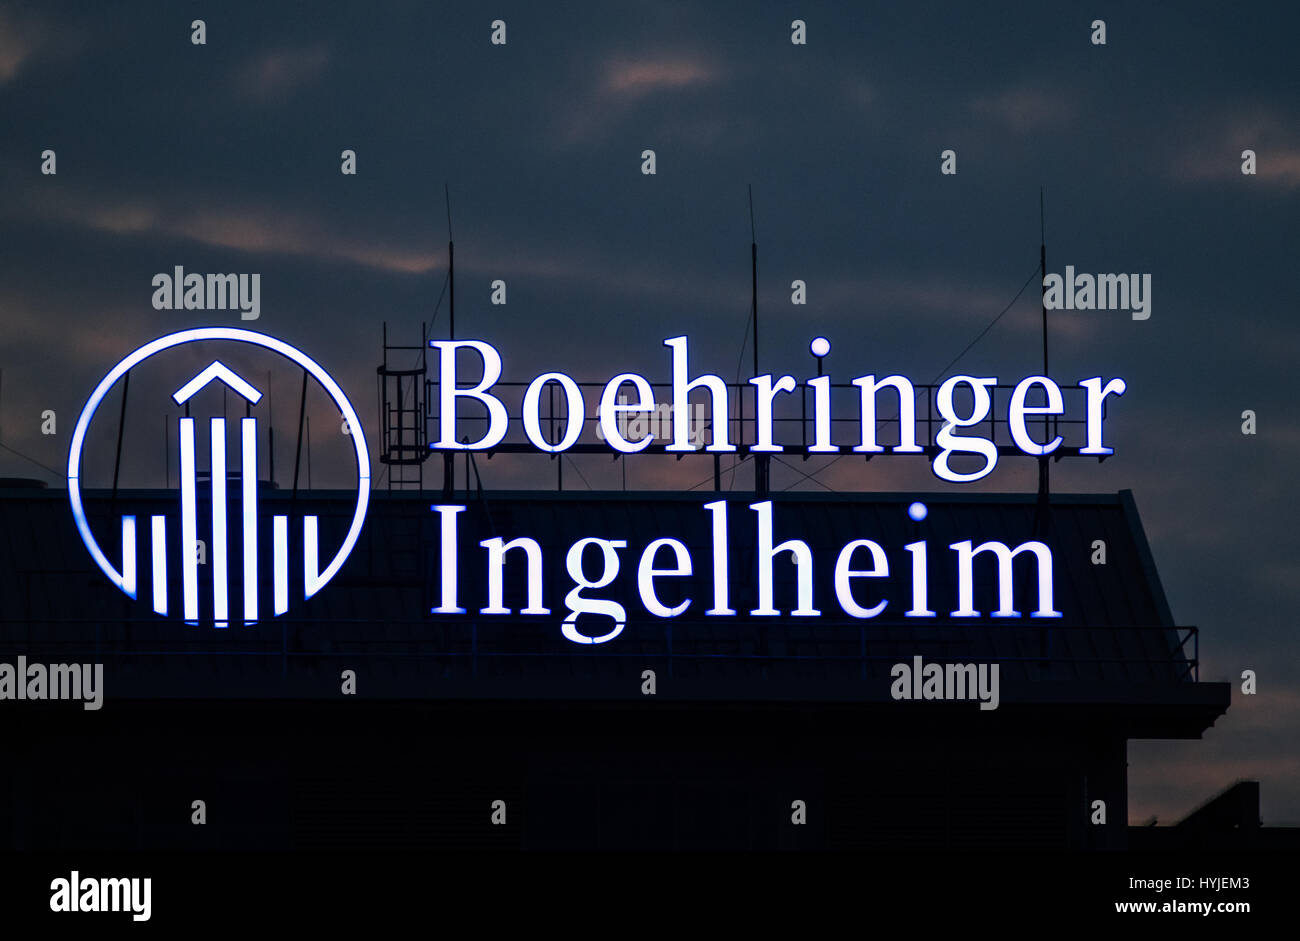 Ingelheim, Germania. 1 Aprile, 2017. Il lettering "Boehringer Ingelheim' visto presso la sede aziendale della società farmaceutica Boehringer Ingelheim in Ingelheim, Germania, 01 aprile 2017. Foto: Andreas Arnold/dpa/Alamy Live News Foto Stock